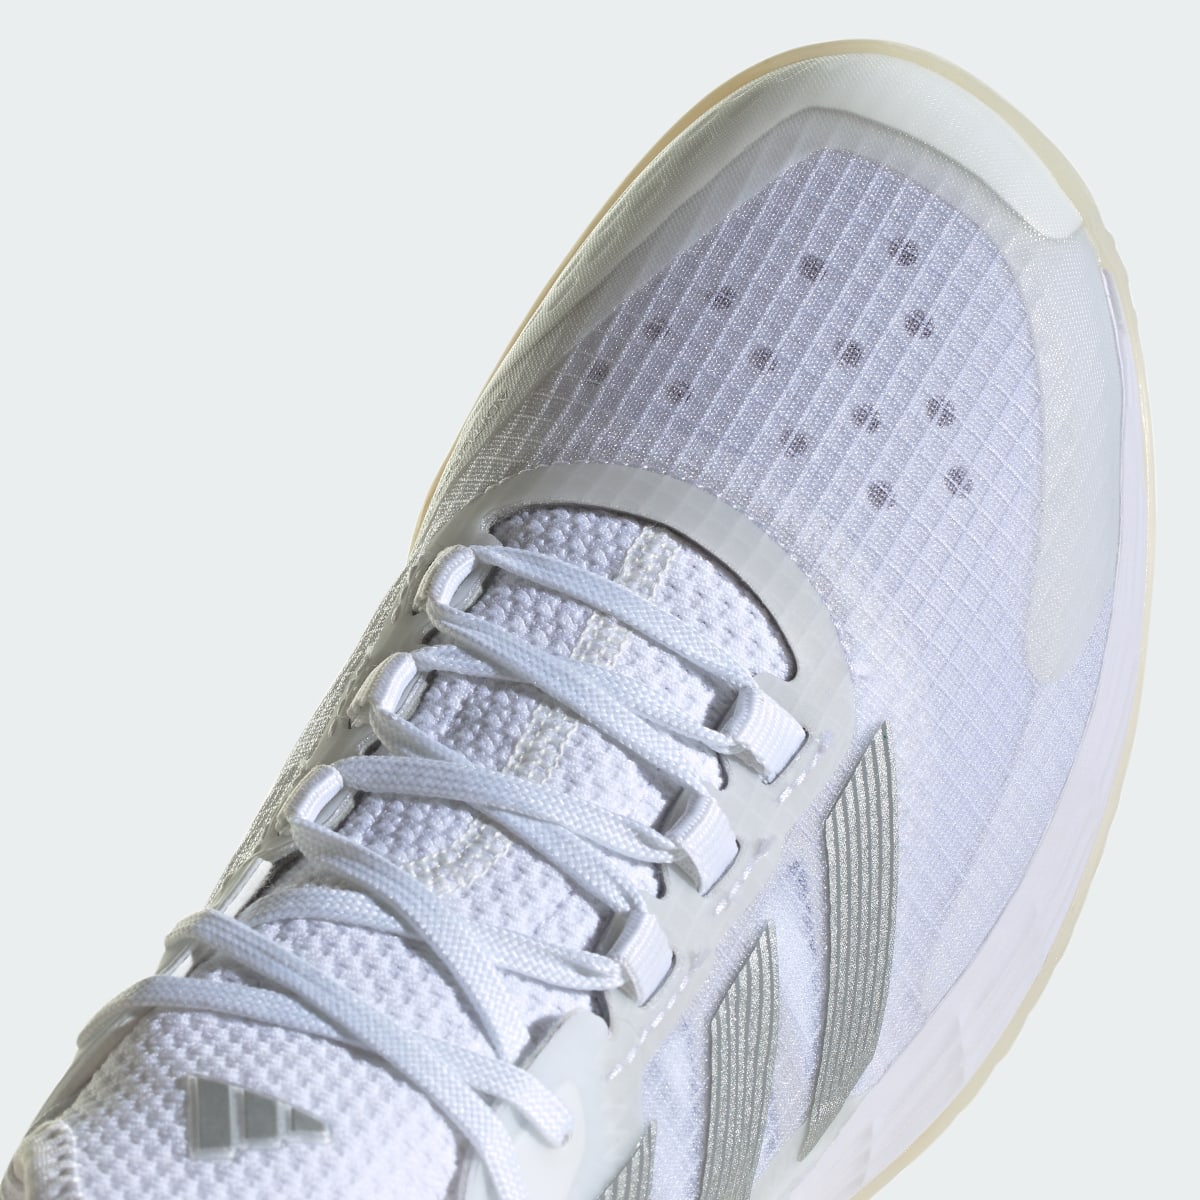 Adidas Adizero Ubersonic 4.1 Tennis Shoes. 10